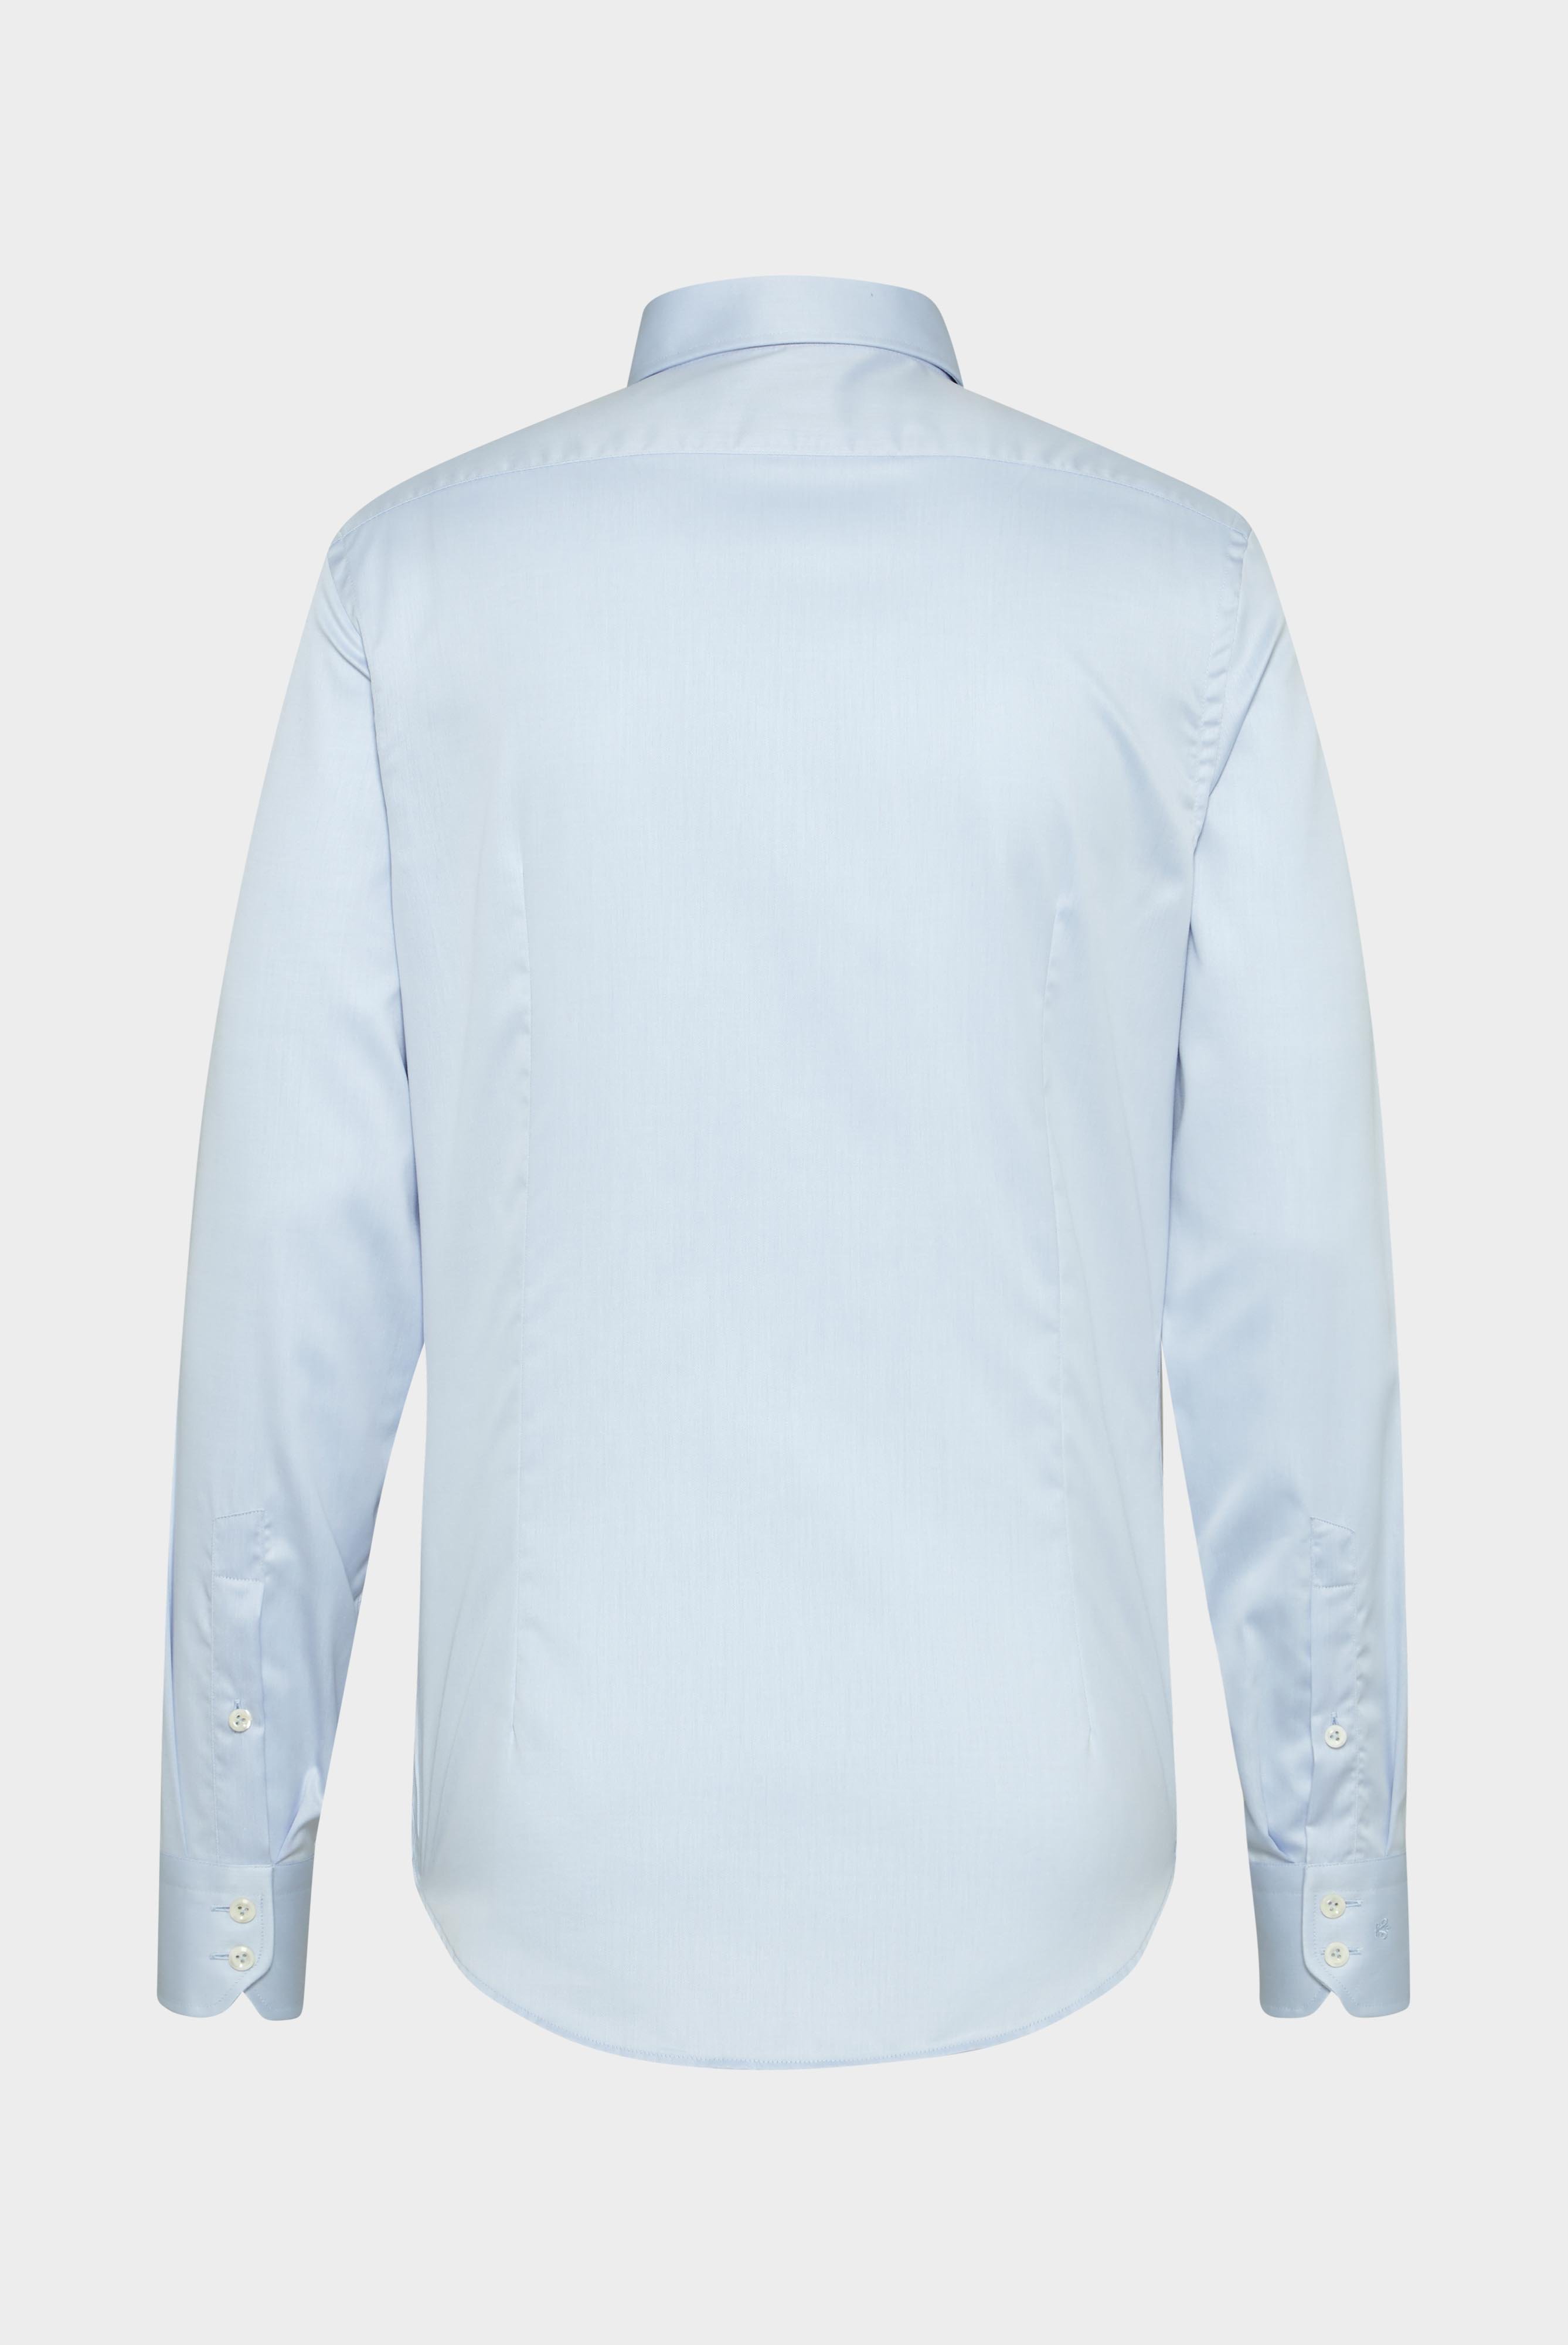 Bügelleichte Hemden+Bügelfreies Twill Hemd Slim Fit+20.2019.BQ.132241.720.37